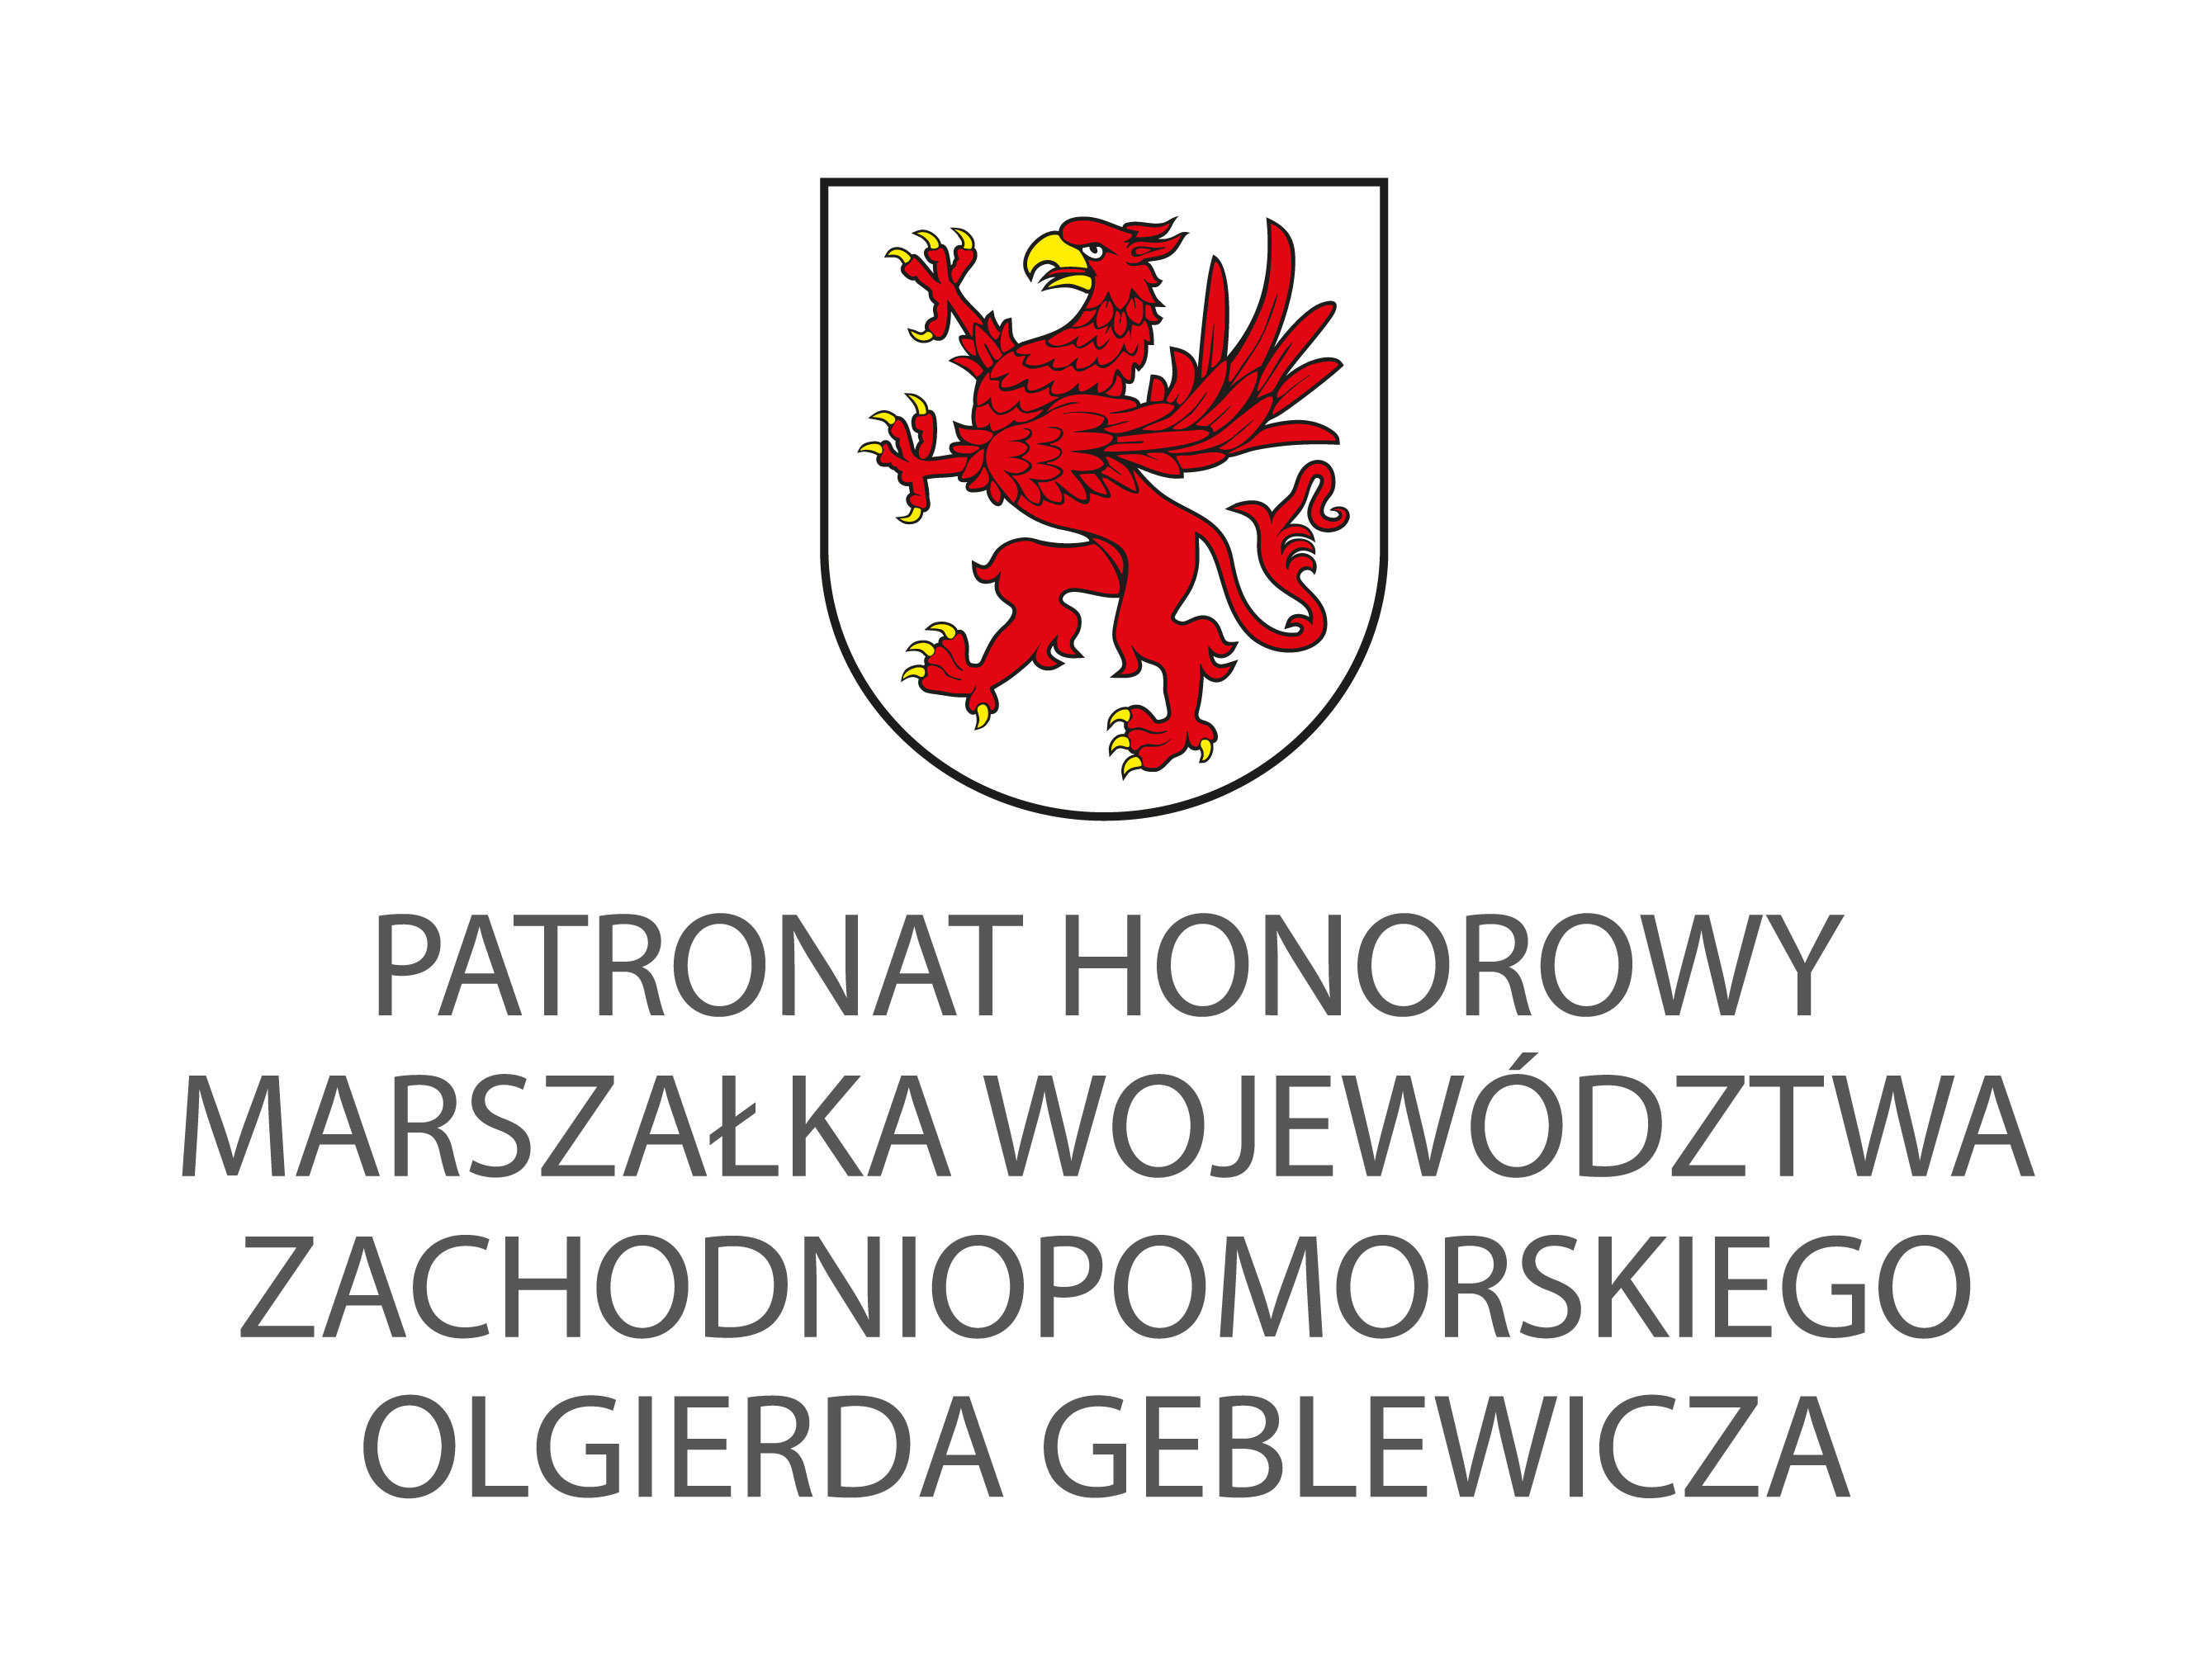 Logotyp Urzędu Marszałkowskiego Województwa Zachodniopomorskiego wraz z tekstem pod logotypem patronat honorowy Marszałka województwa zachodniopomorskiego Olgierda Geblewicza